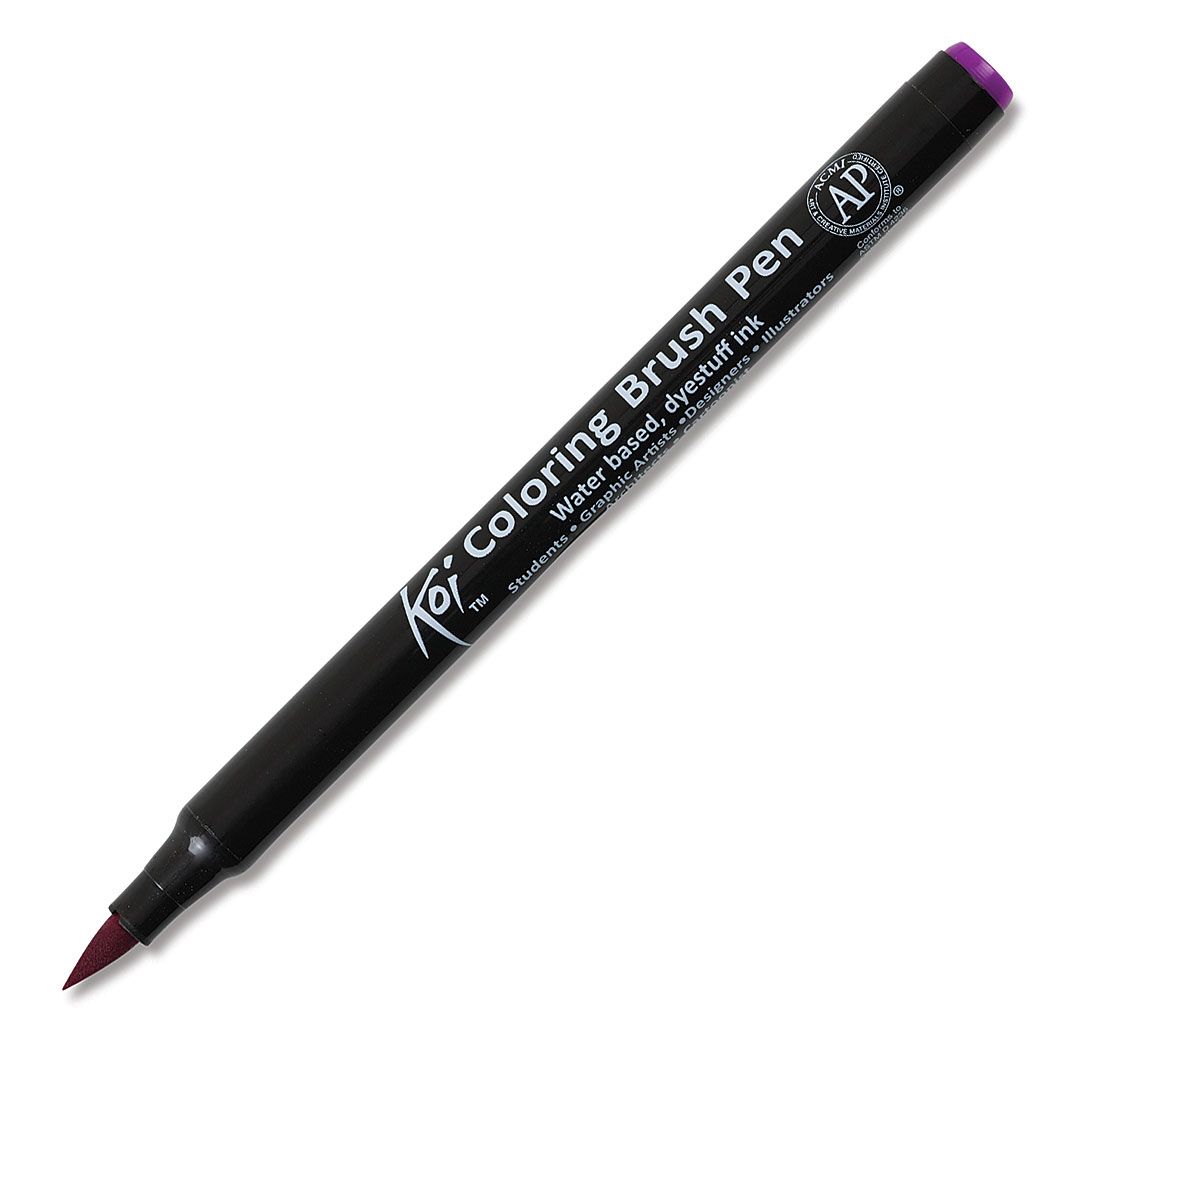 Sakura Koi Colouring Single Brush Pens - Artsavingsclub